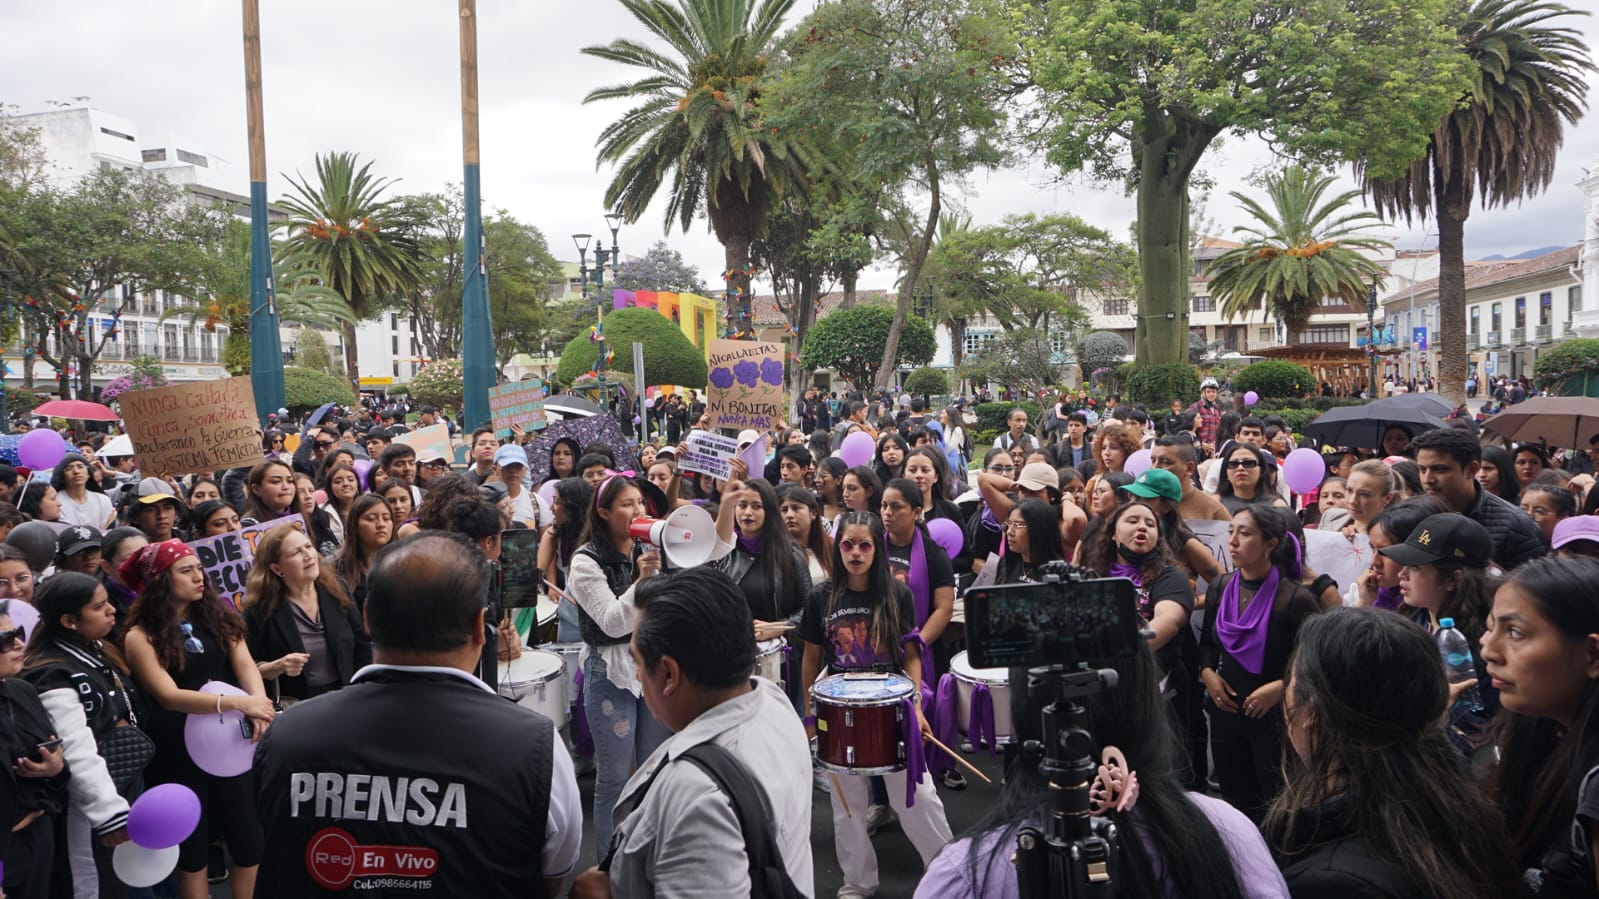 JUSTICIA. La multitud llegó a las puertas de la Gobernación de Loja, levantando consignas y pancartas que demandan una respuesta rápida y transparente ante la tragedia. 